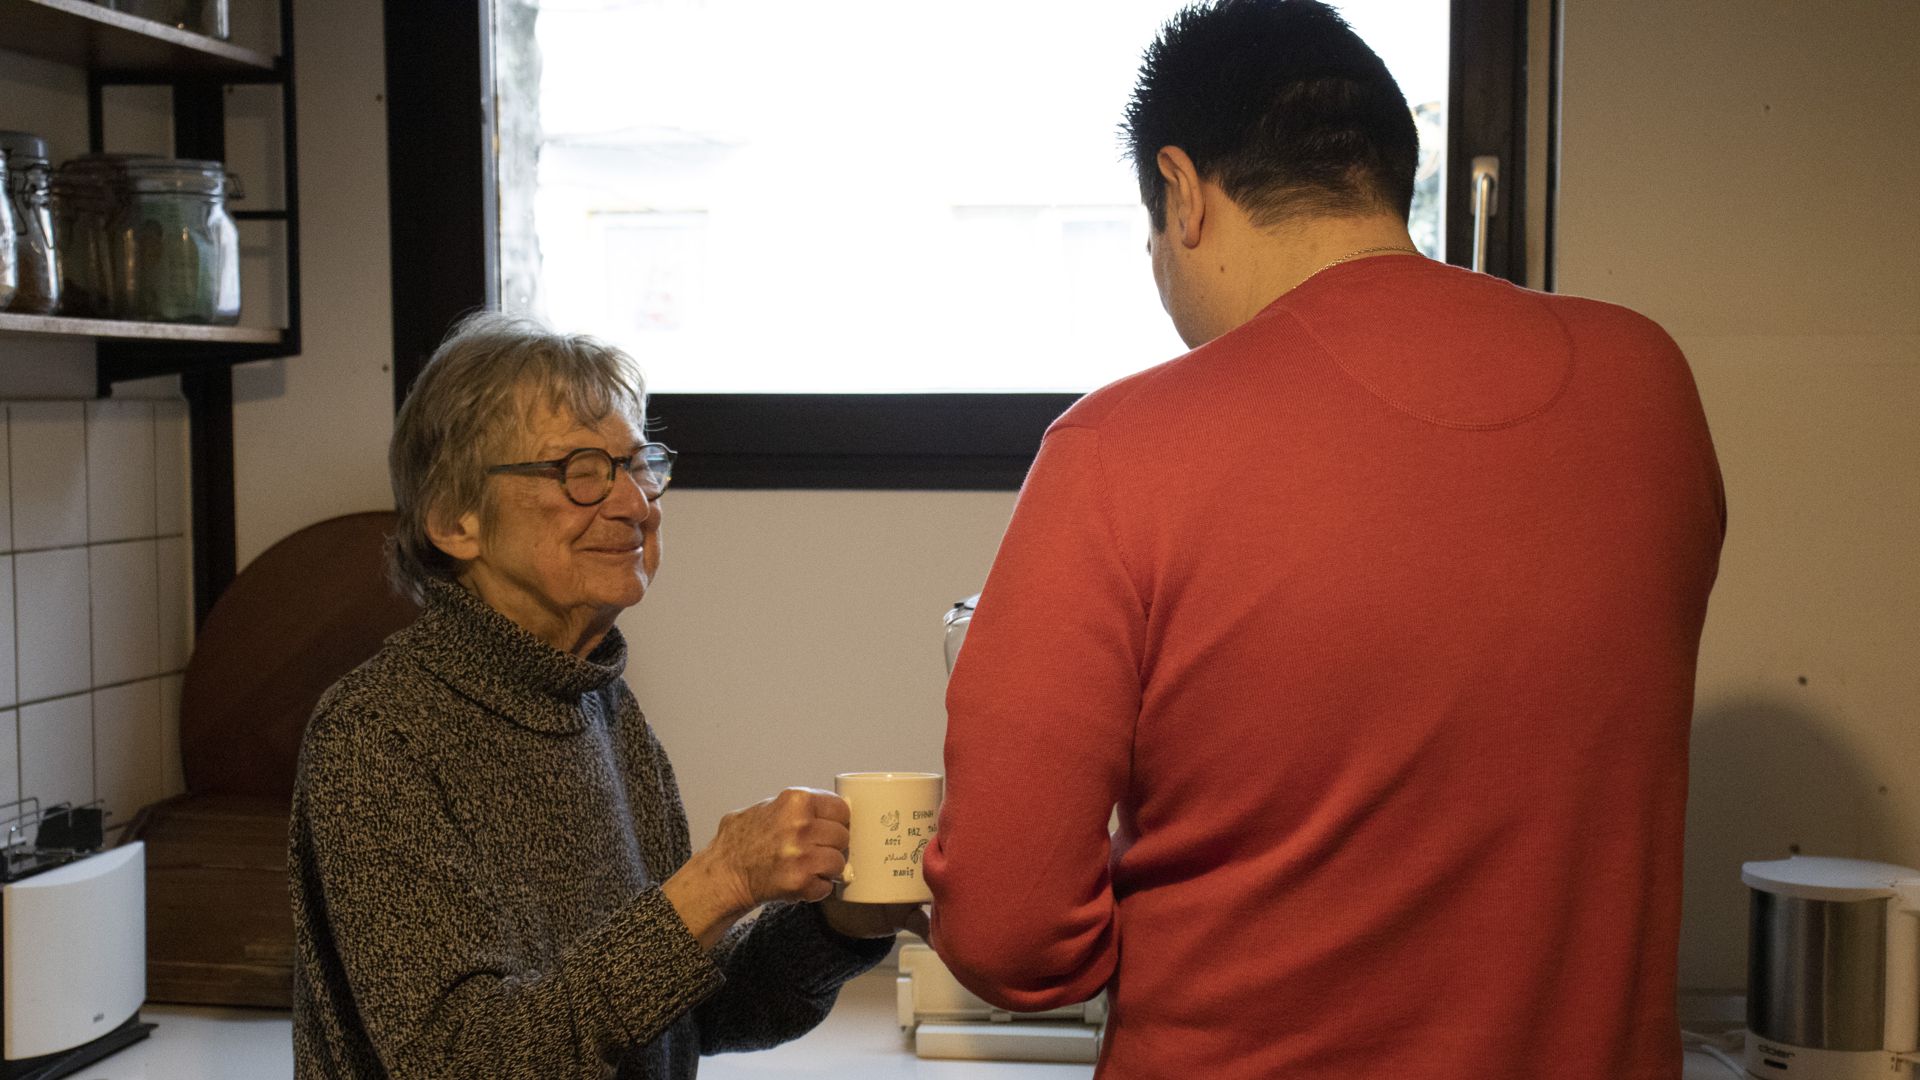 Links steht eine ältere Dame, hebt einen Kaffeebecher. Rechts schenkt ein junger Mann der Dame Kaffee ein.